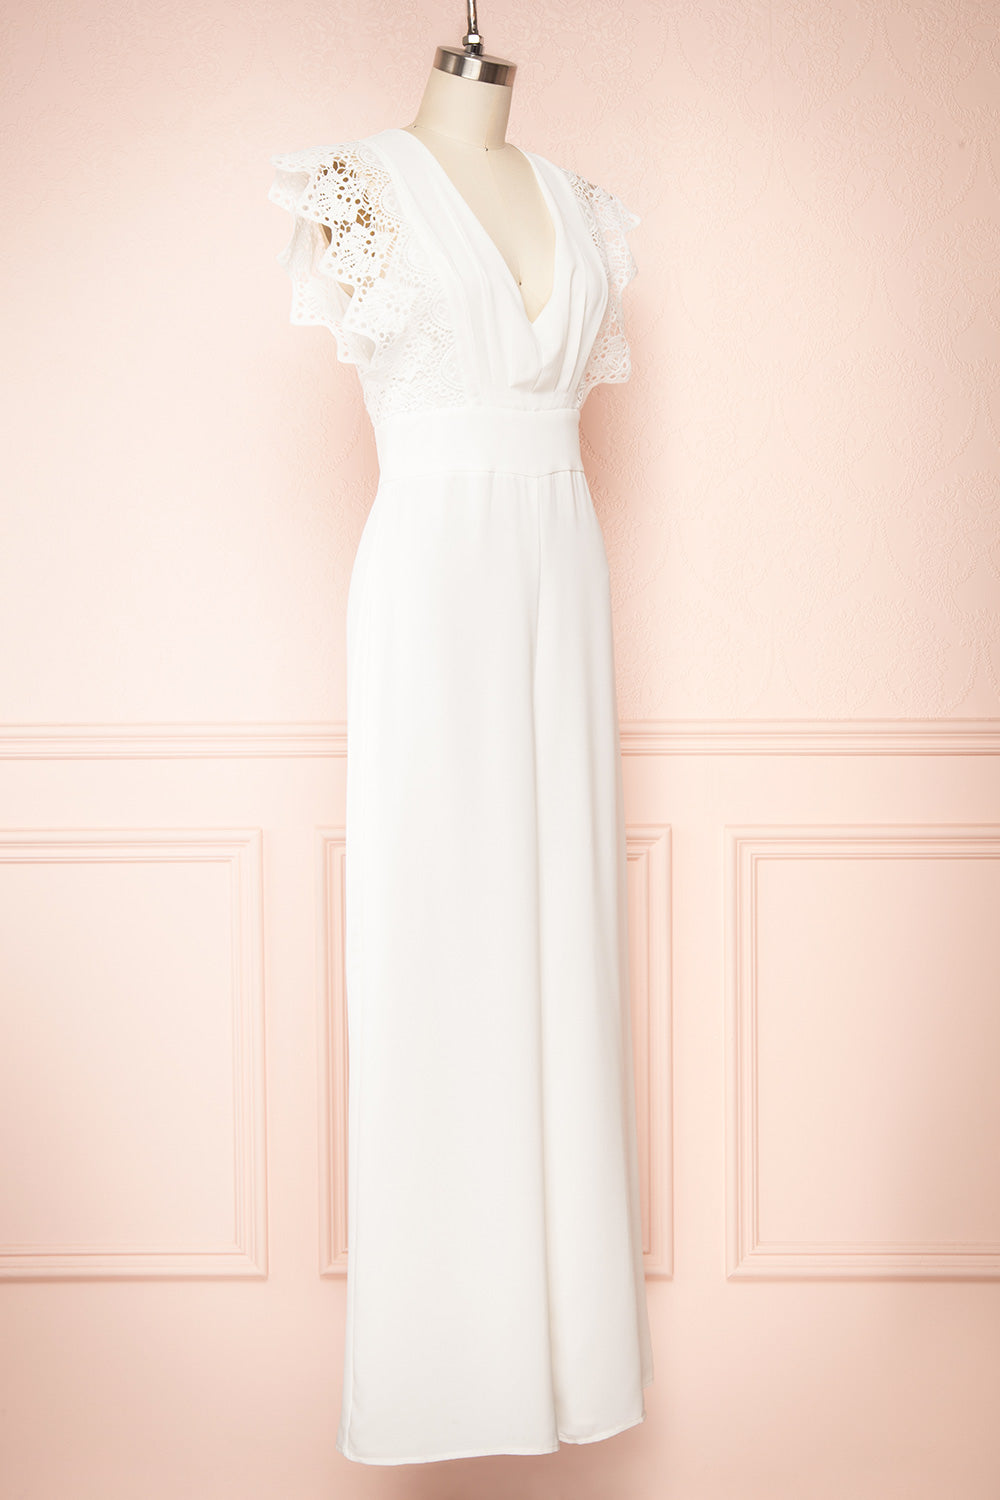 Ivanna White Bridal Jumpsuit w/ Deep V-neck | Boutique 1861 side view